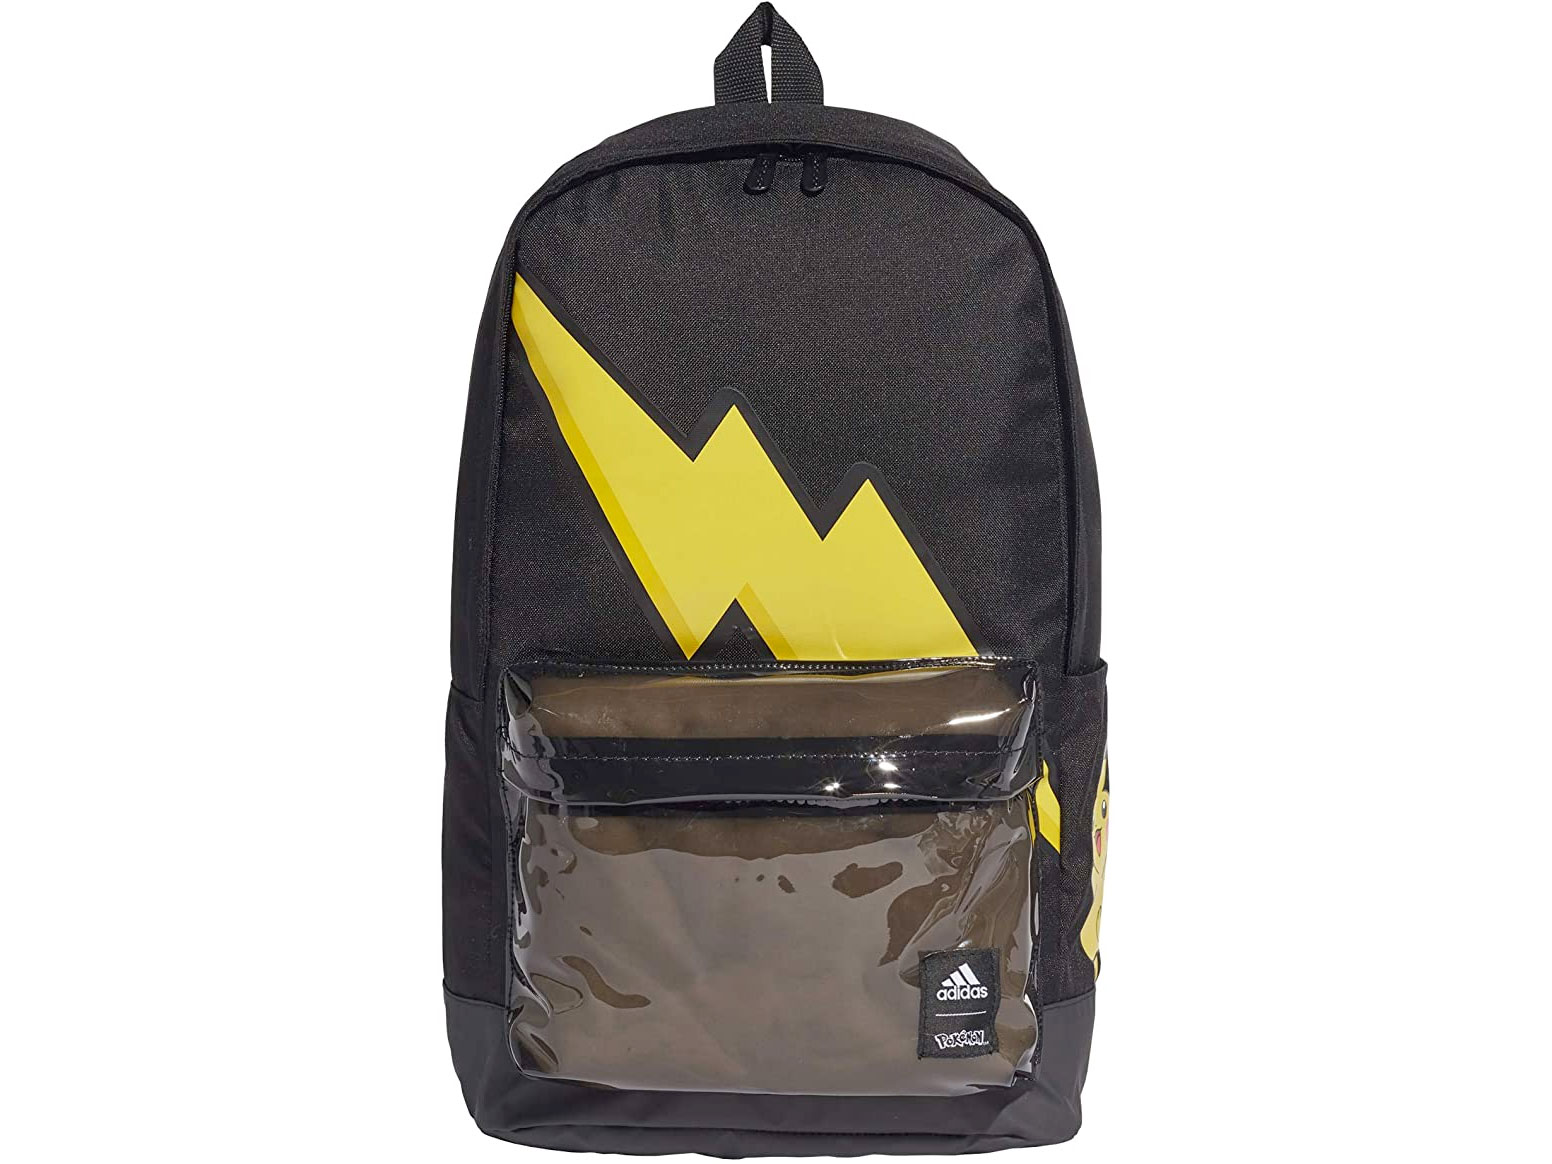 Amazon：Adidas x Pokemon Backpack只卖$15.60